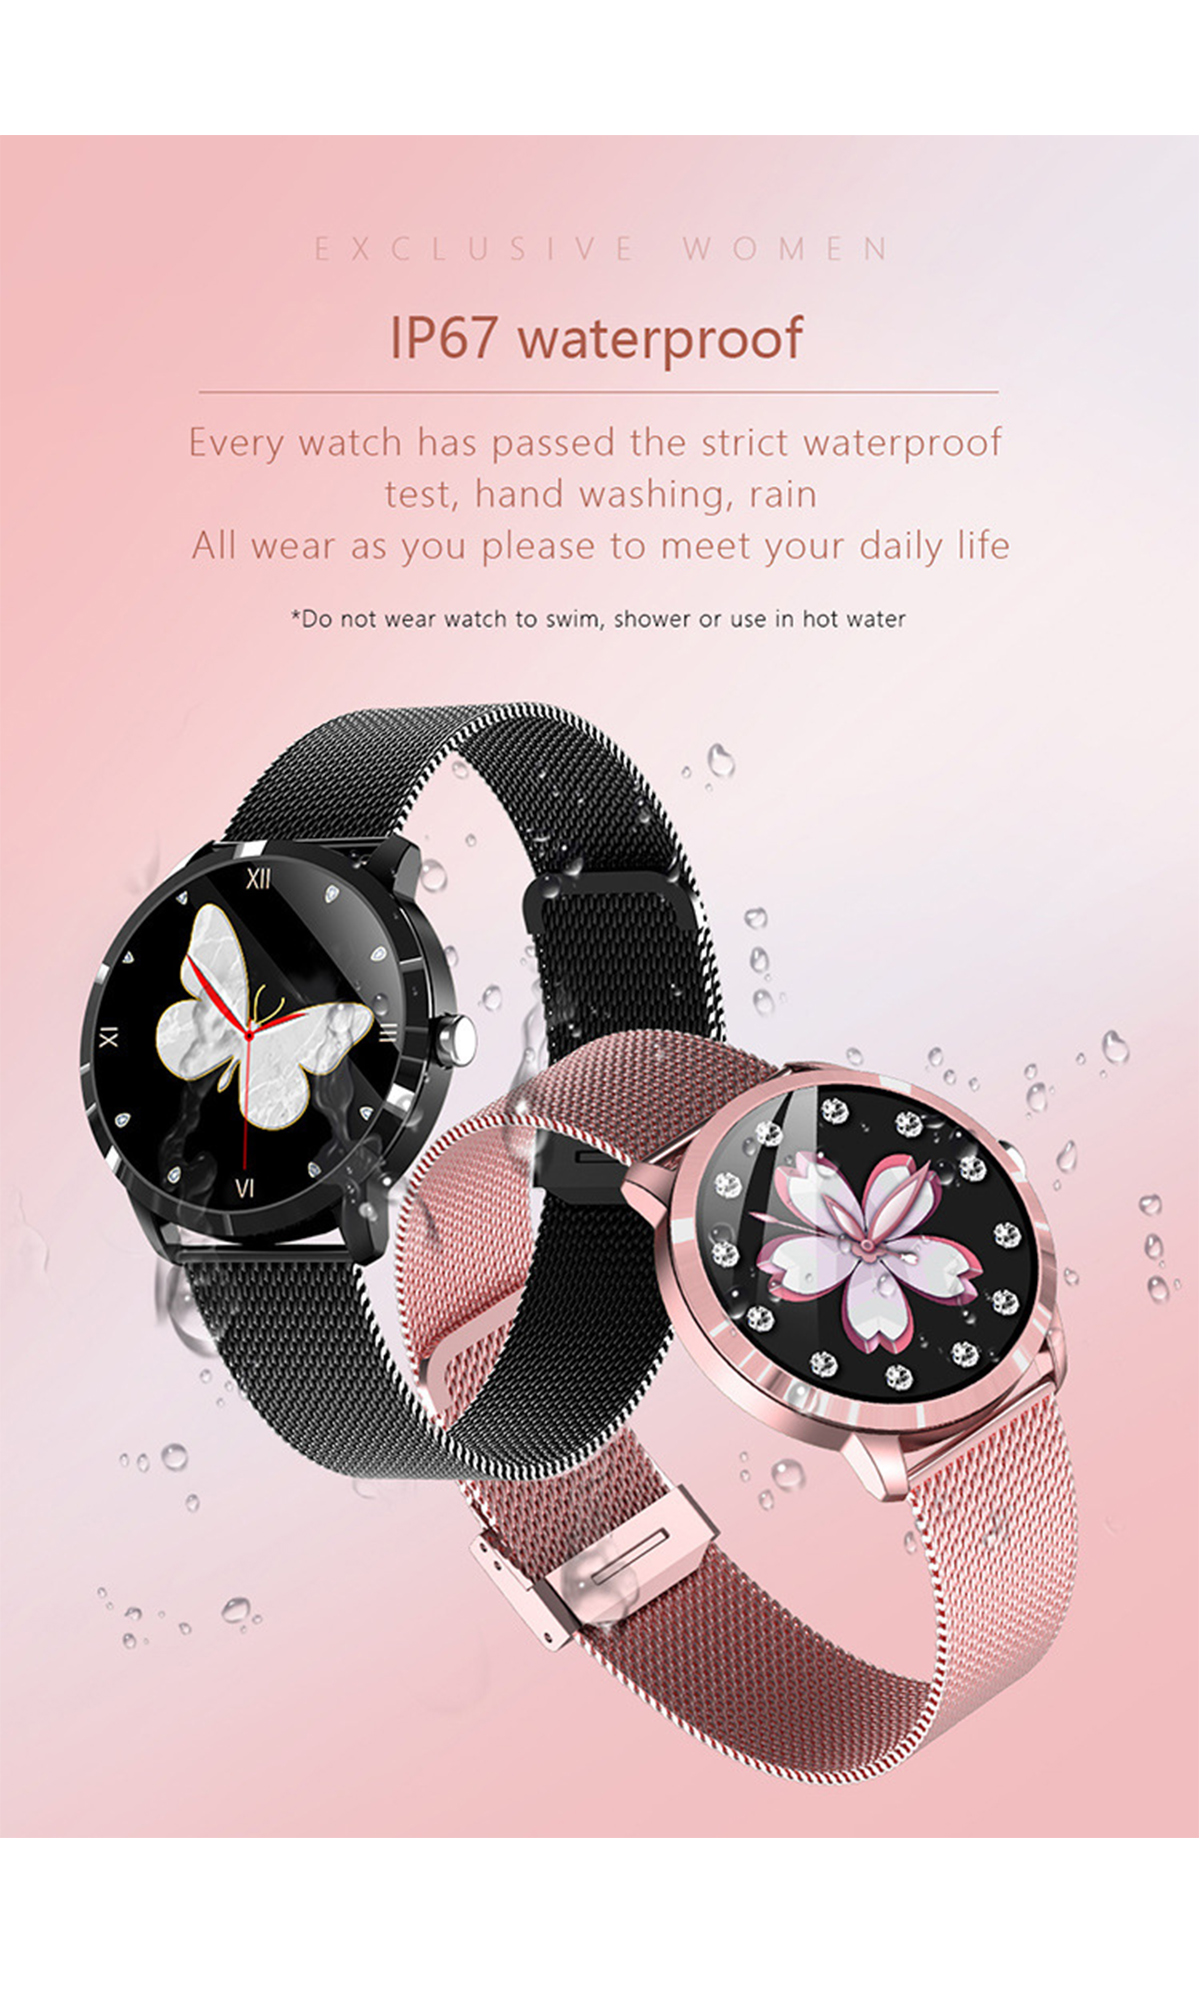 rostfreie mit Blutdrucküberwachung Rosa & Stähle, Herzfrequenzmessung Smartwatch Smartwatch BRIGHTAKE